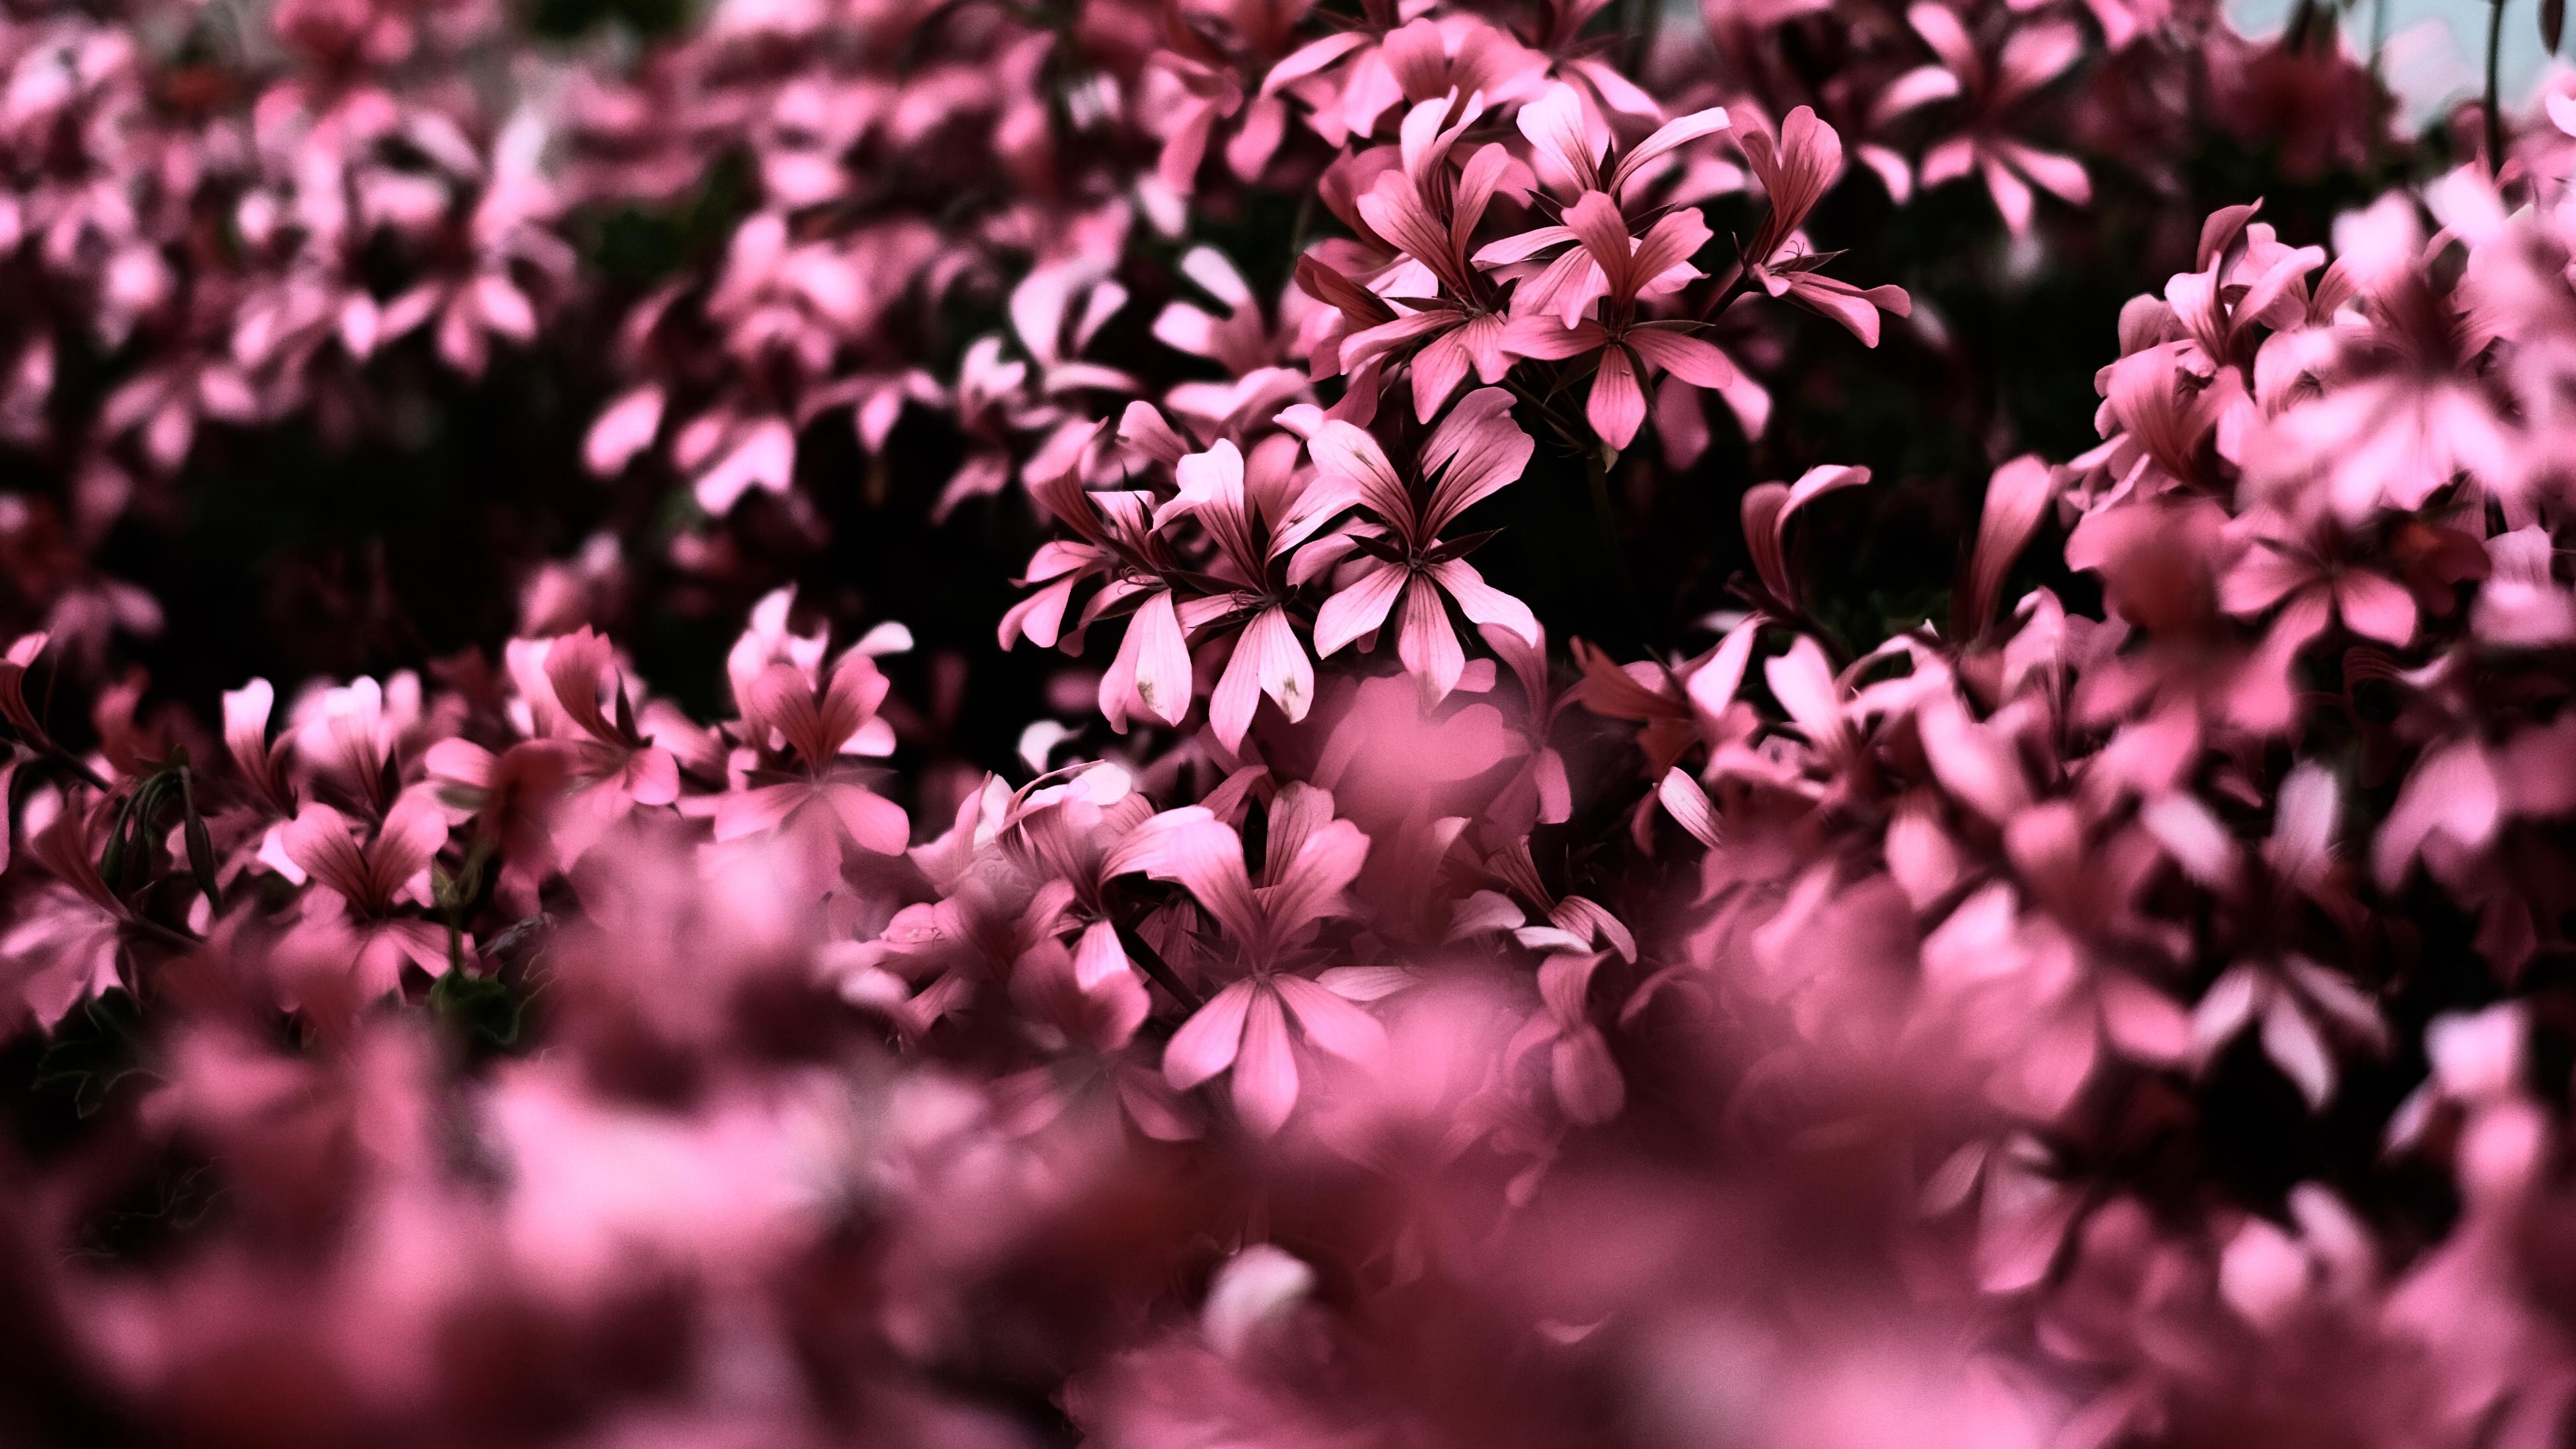 Pink Flowers Ultra HD Blur 4k, HD Flowers, 4k Wallpaper